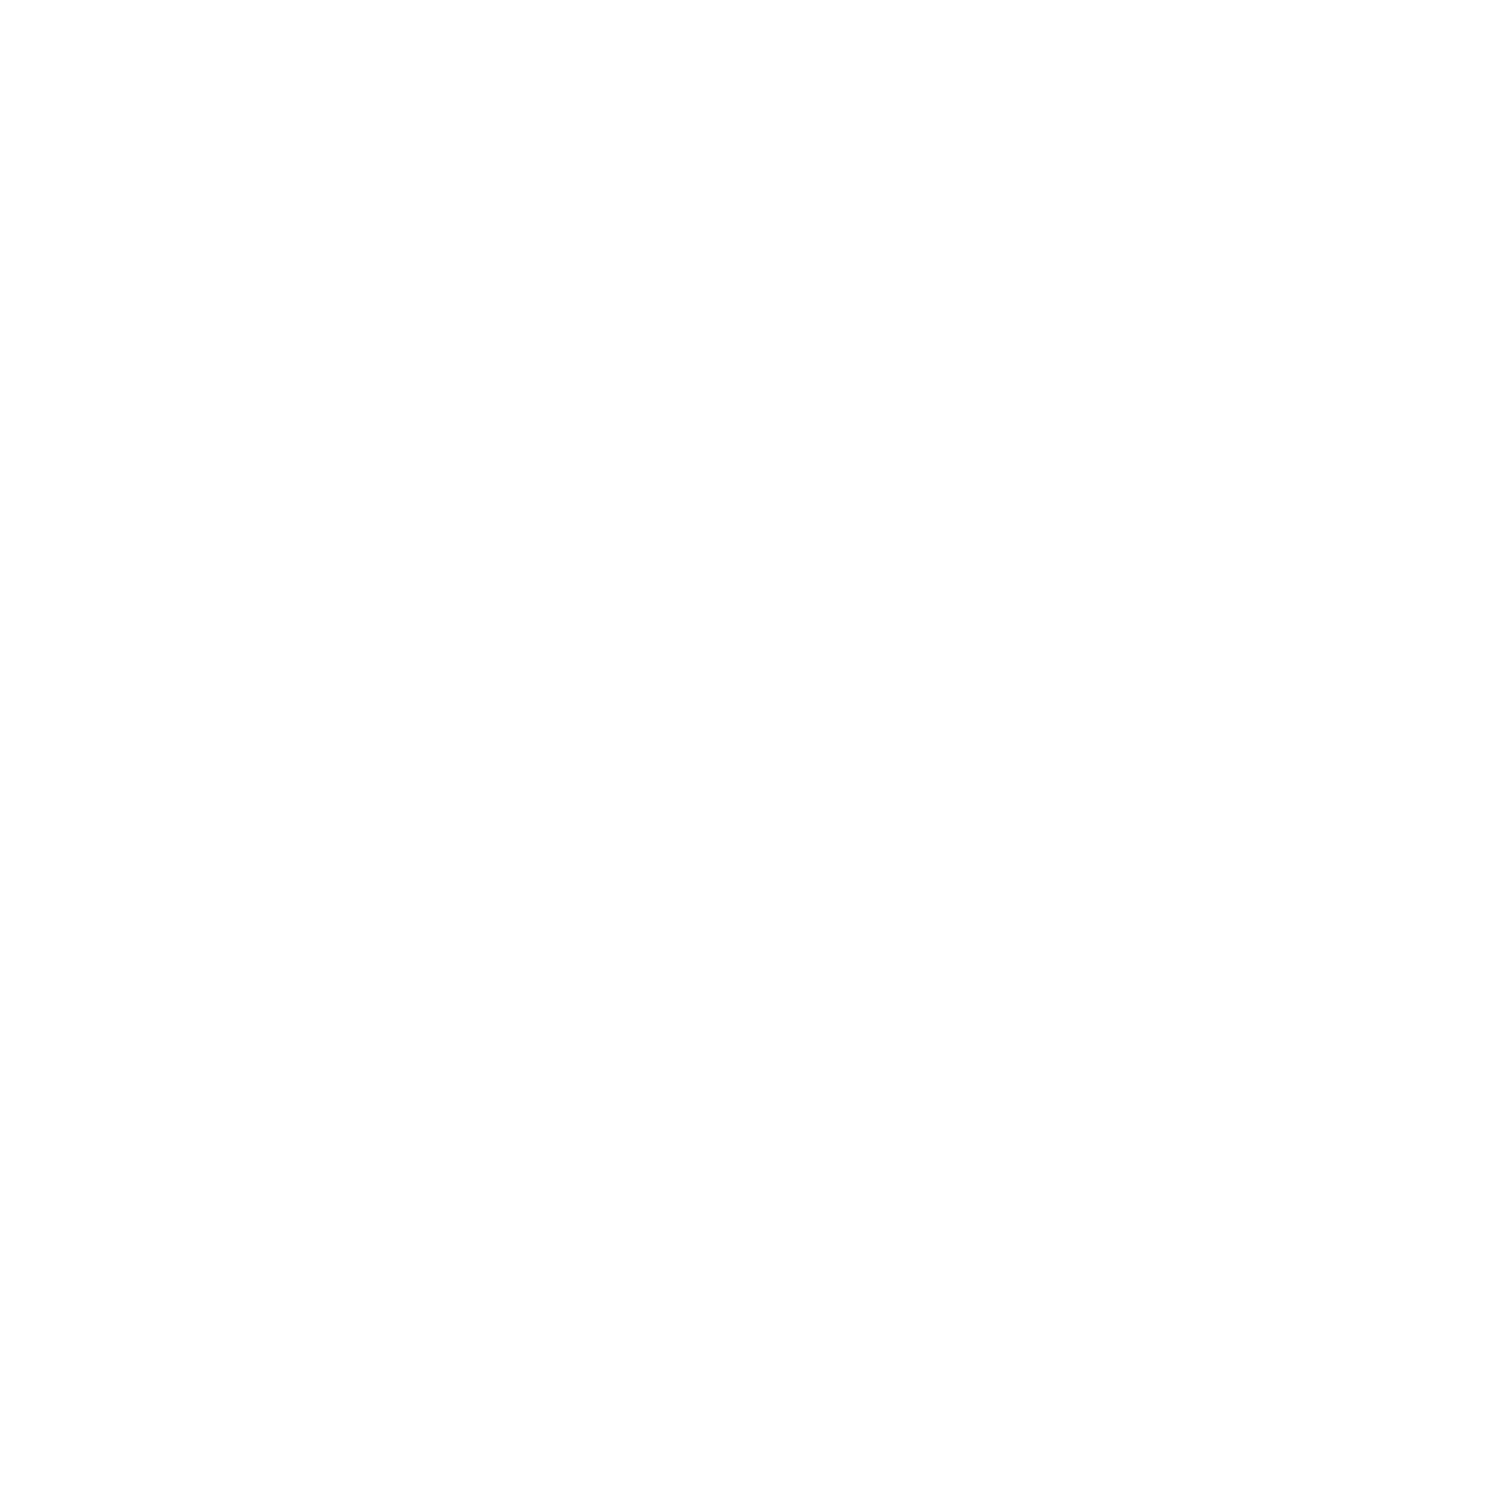 Voleatech VTAIR Logo (Weiß)